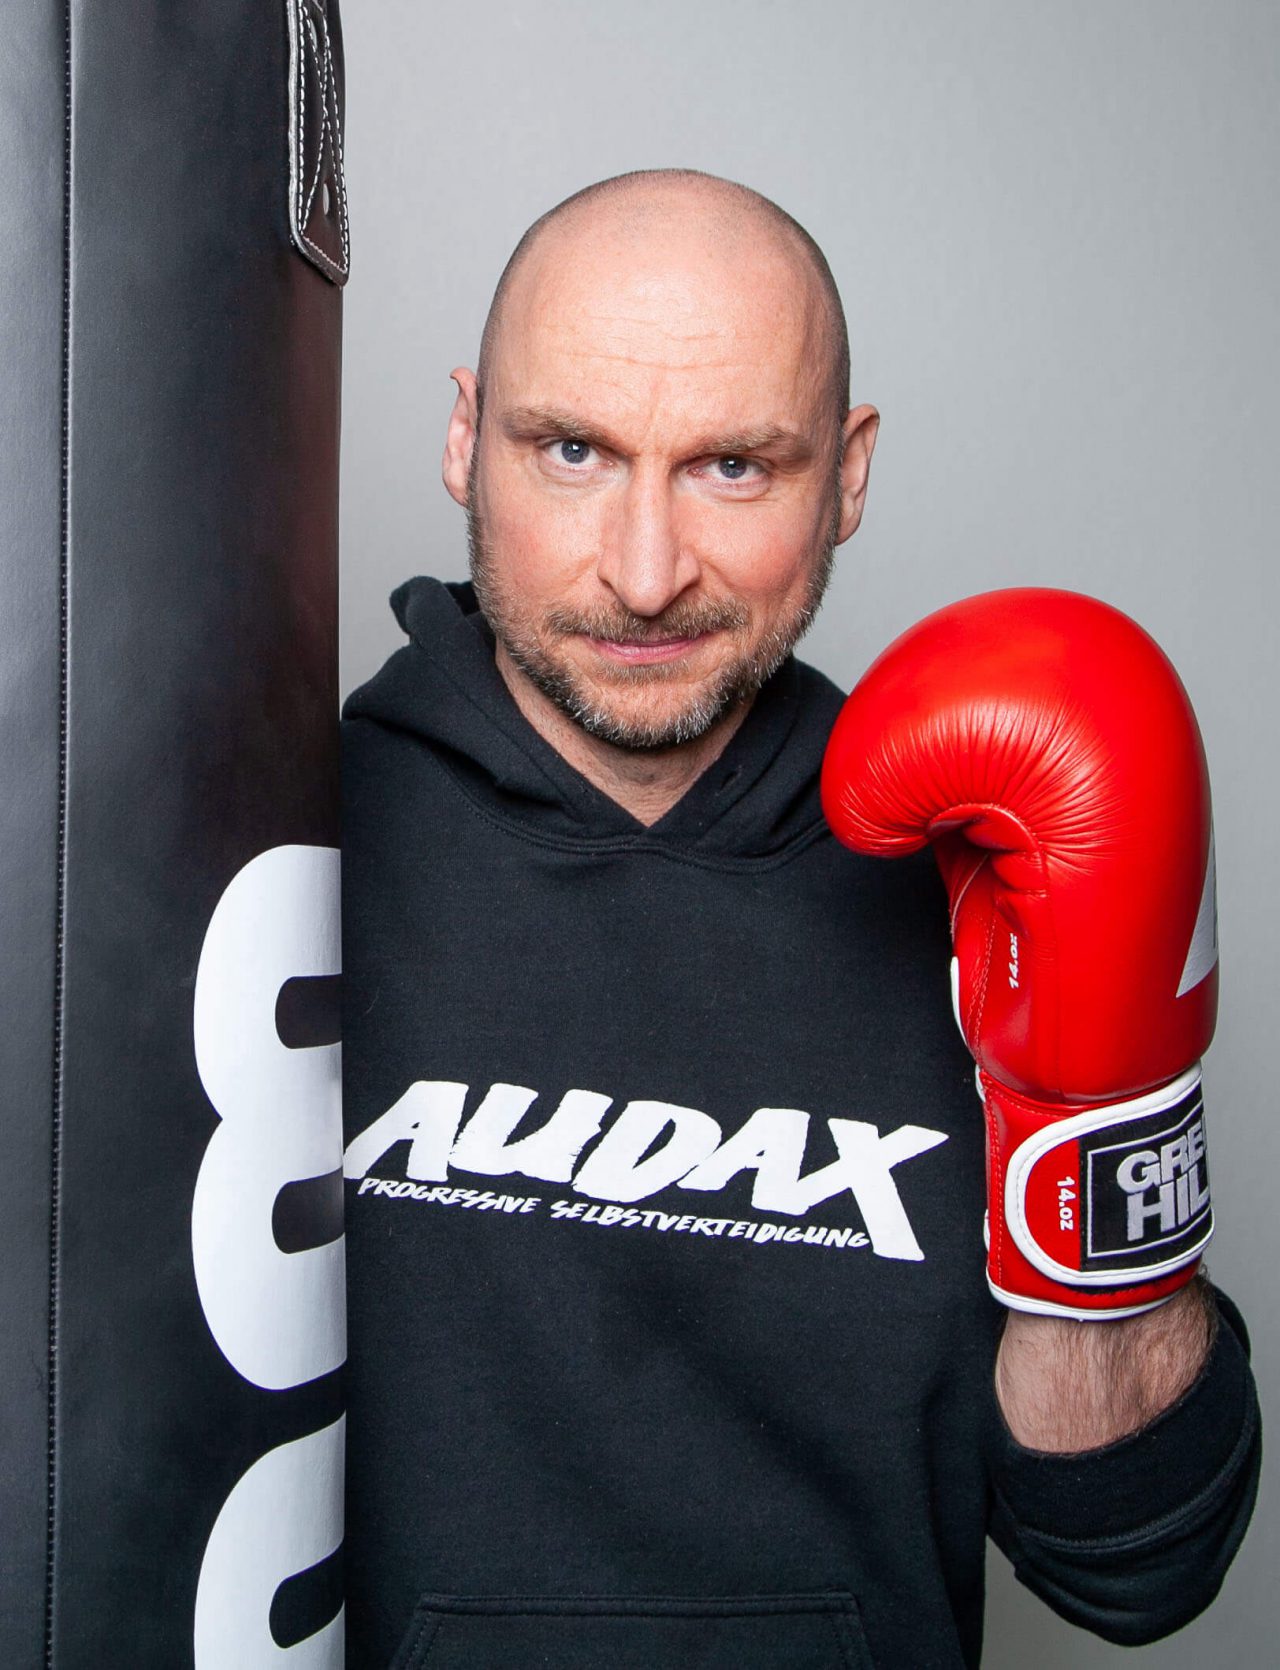 Kampfsport und Selbstverteidigungstrainer Christian steht mit einem Boxhandschuh am Sandsack